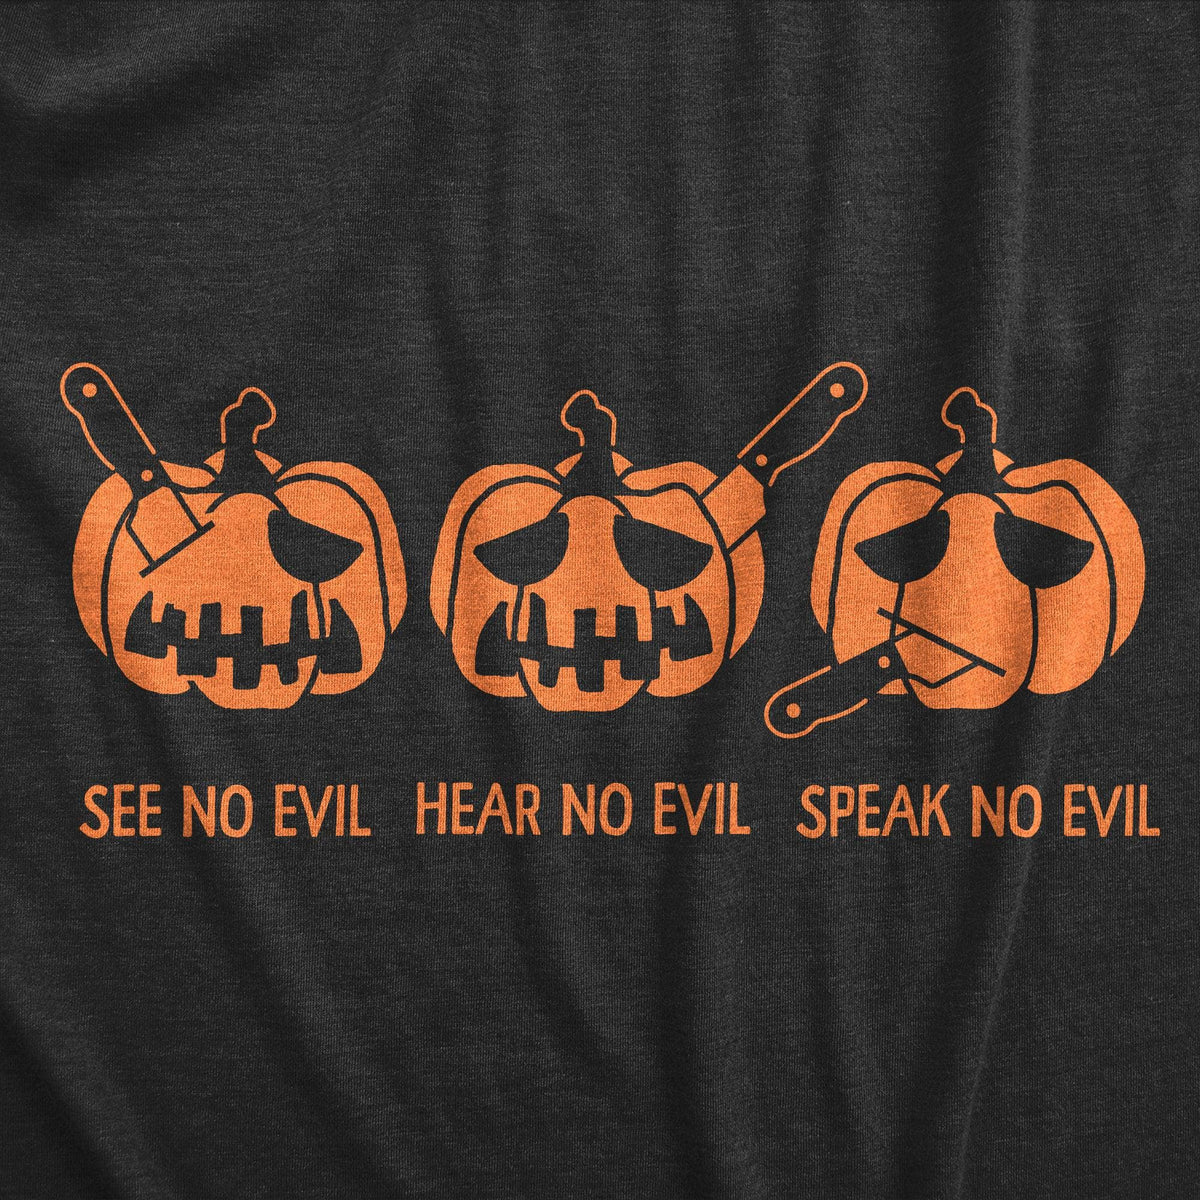 See No Evil Hear No Evil Speak No Evil Pumpkin Women&#39;s Tshirt  -  Crazy Dog T-Shirts